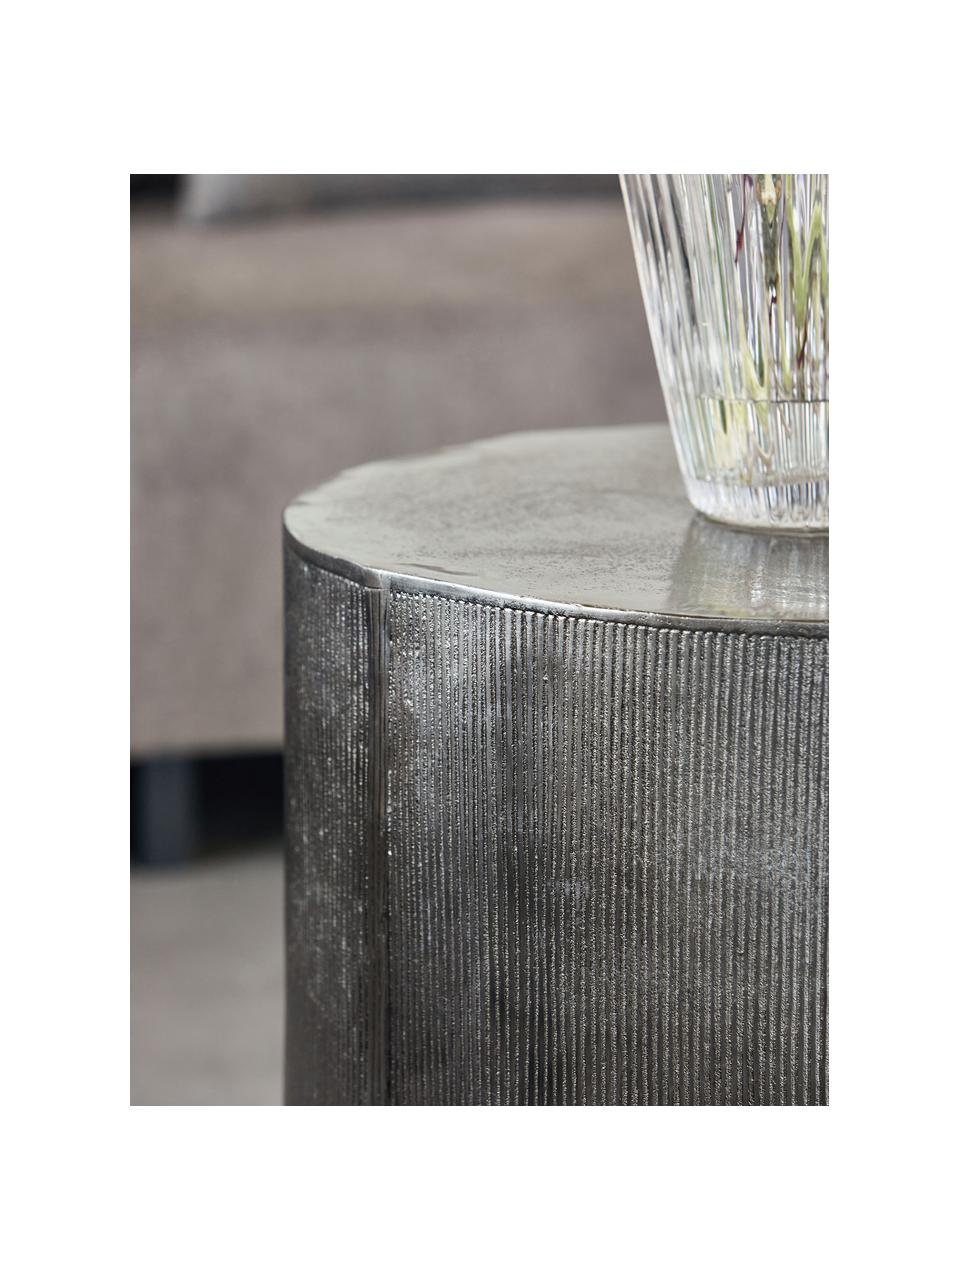 Kulatý odkládací stolek s žebrováním Rota, Potažený hliník, MDF deska (dřevovláknitá deska střední hustoty), Stříbrná, Ø 50 cm, V 50 cm